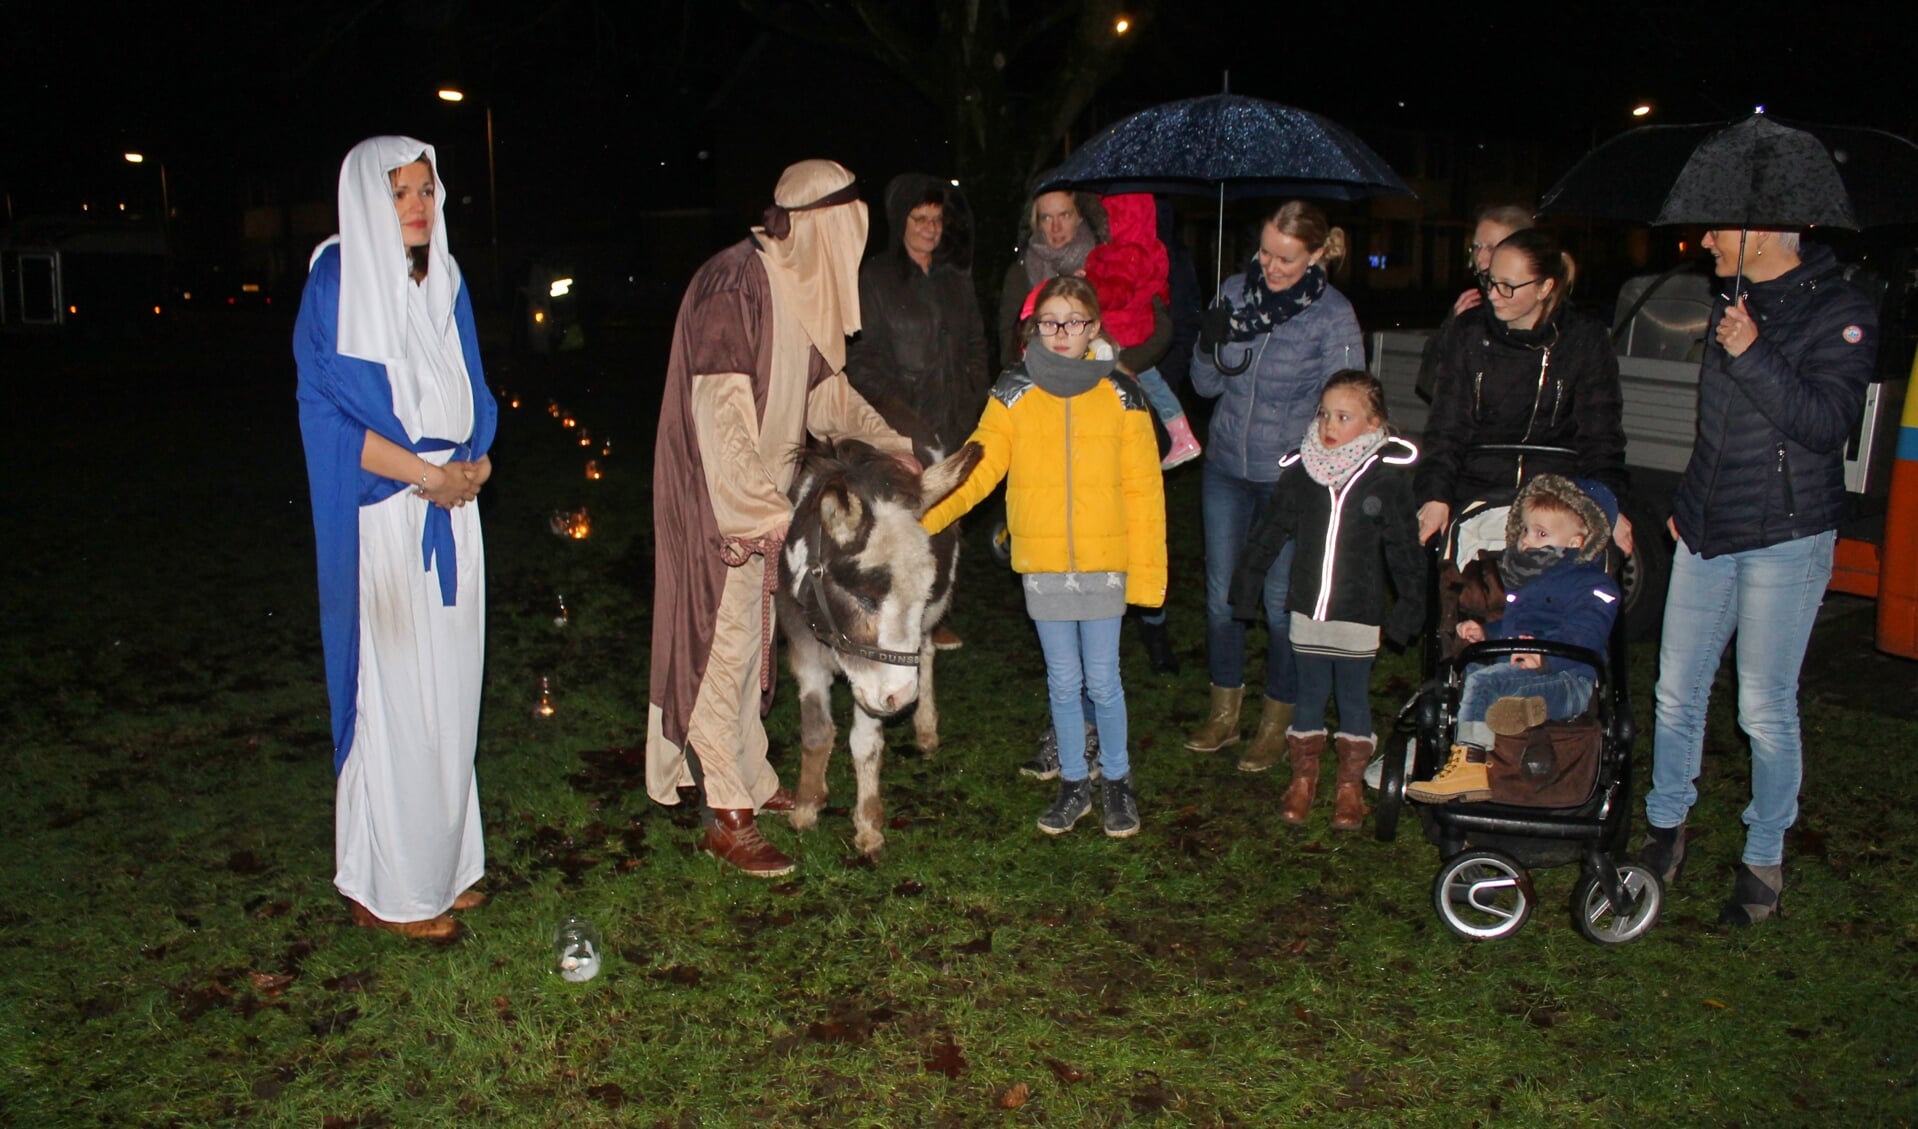 De ezel van het kerstverhaal kan rekenen op veel belangstellende kinderen tijdens de Herdertjestocht in Vorden. Foto: Rien Wagenvoort